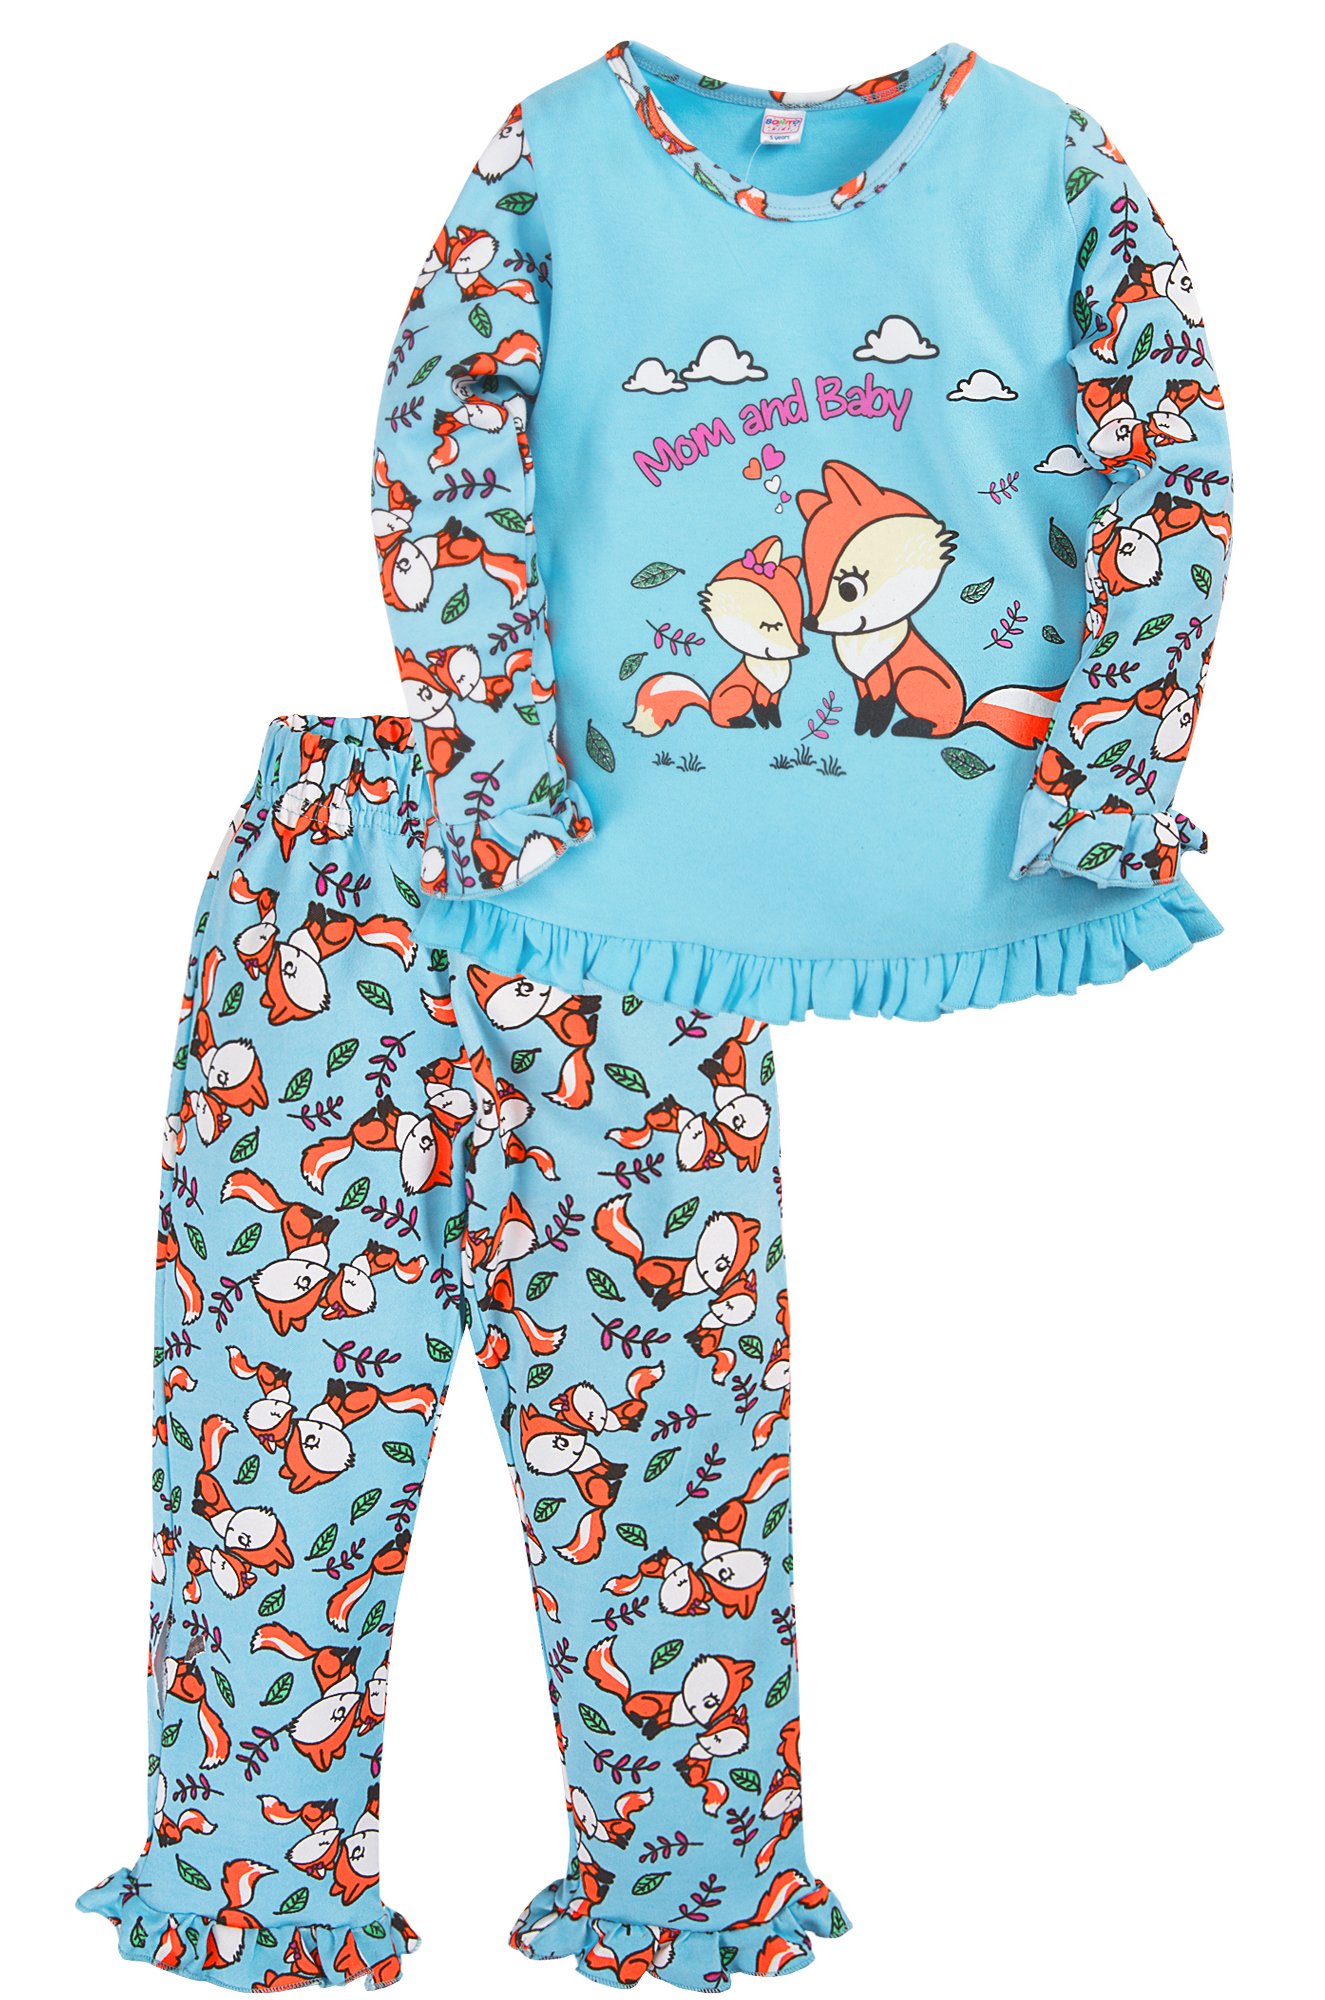 Название пижам. Пижама детская Бонито голубая. Голубая пижама для девочки. Девочка в пижаме Лисенка. Детские пижамы для девочек с лисенком.